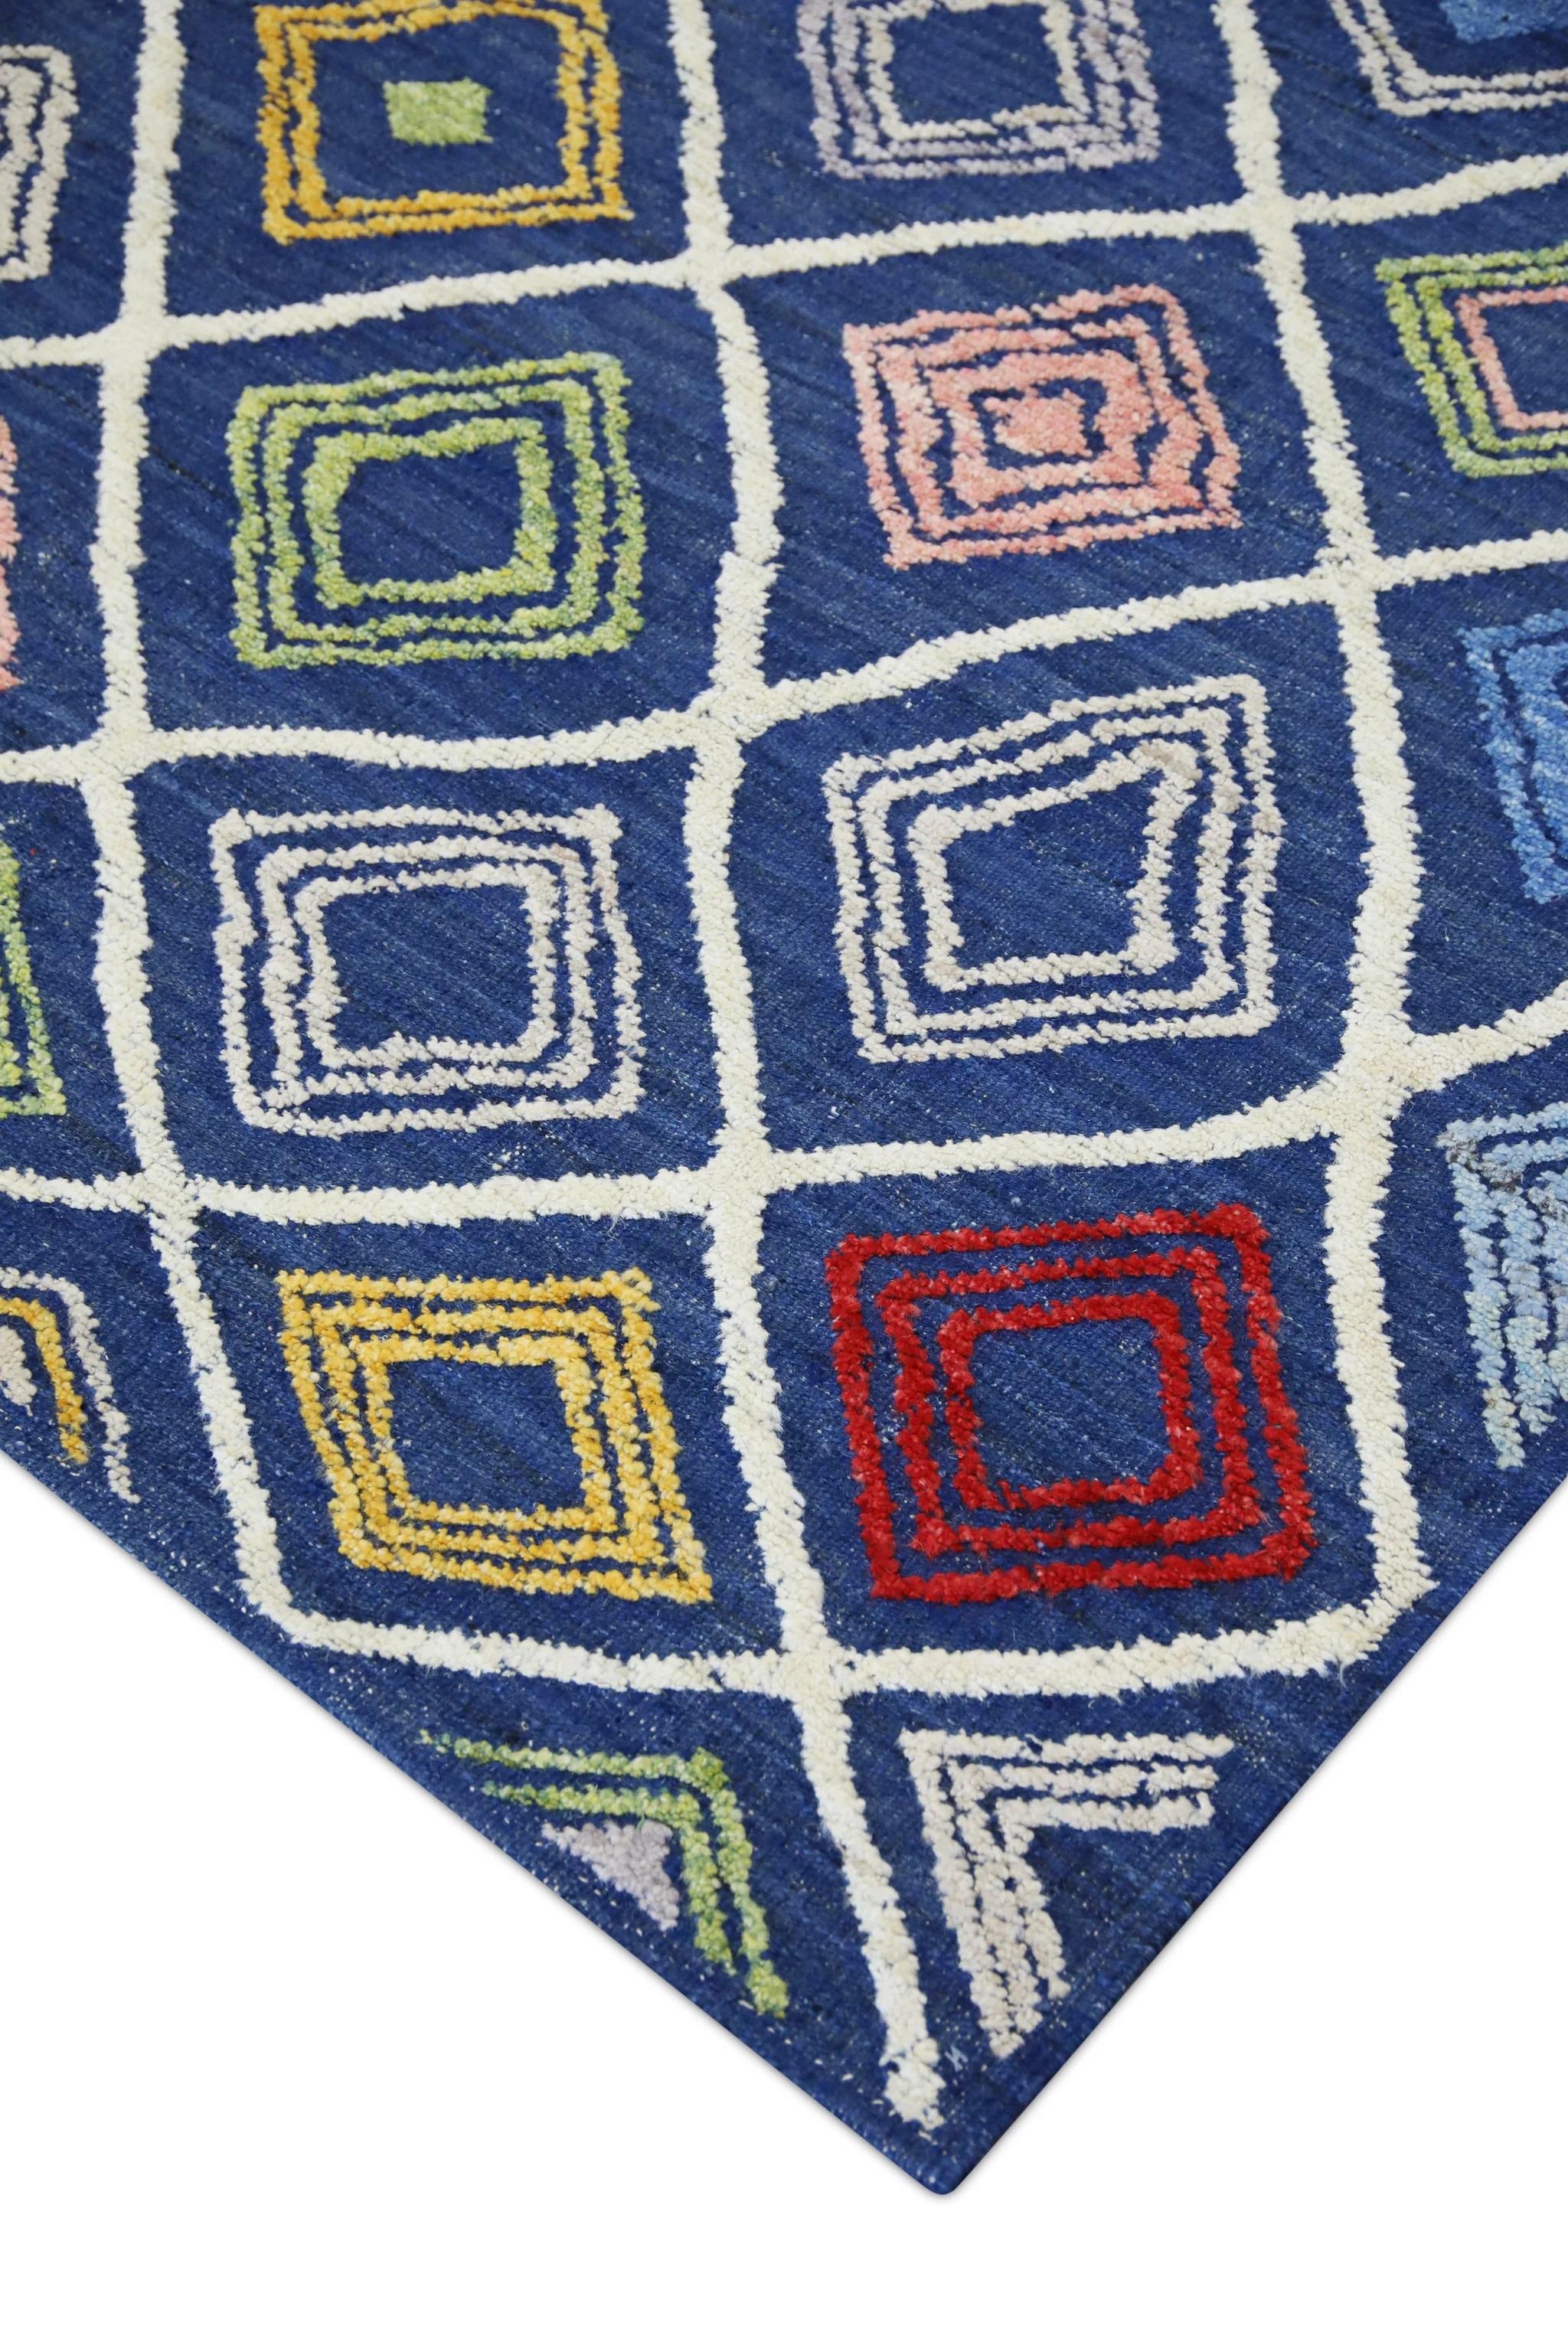 Vegetable Dyed Blue Multicolor Geometric Design Flatweave Handmade Wool Rug 8'11